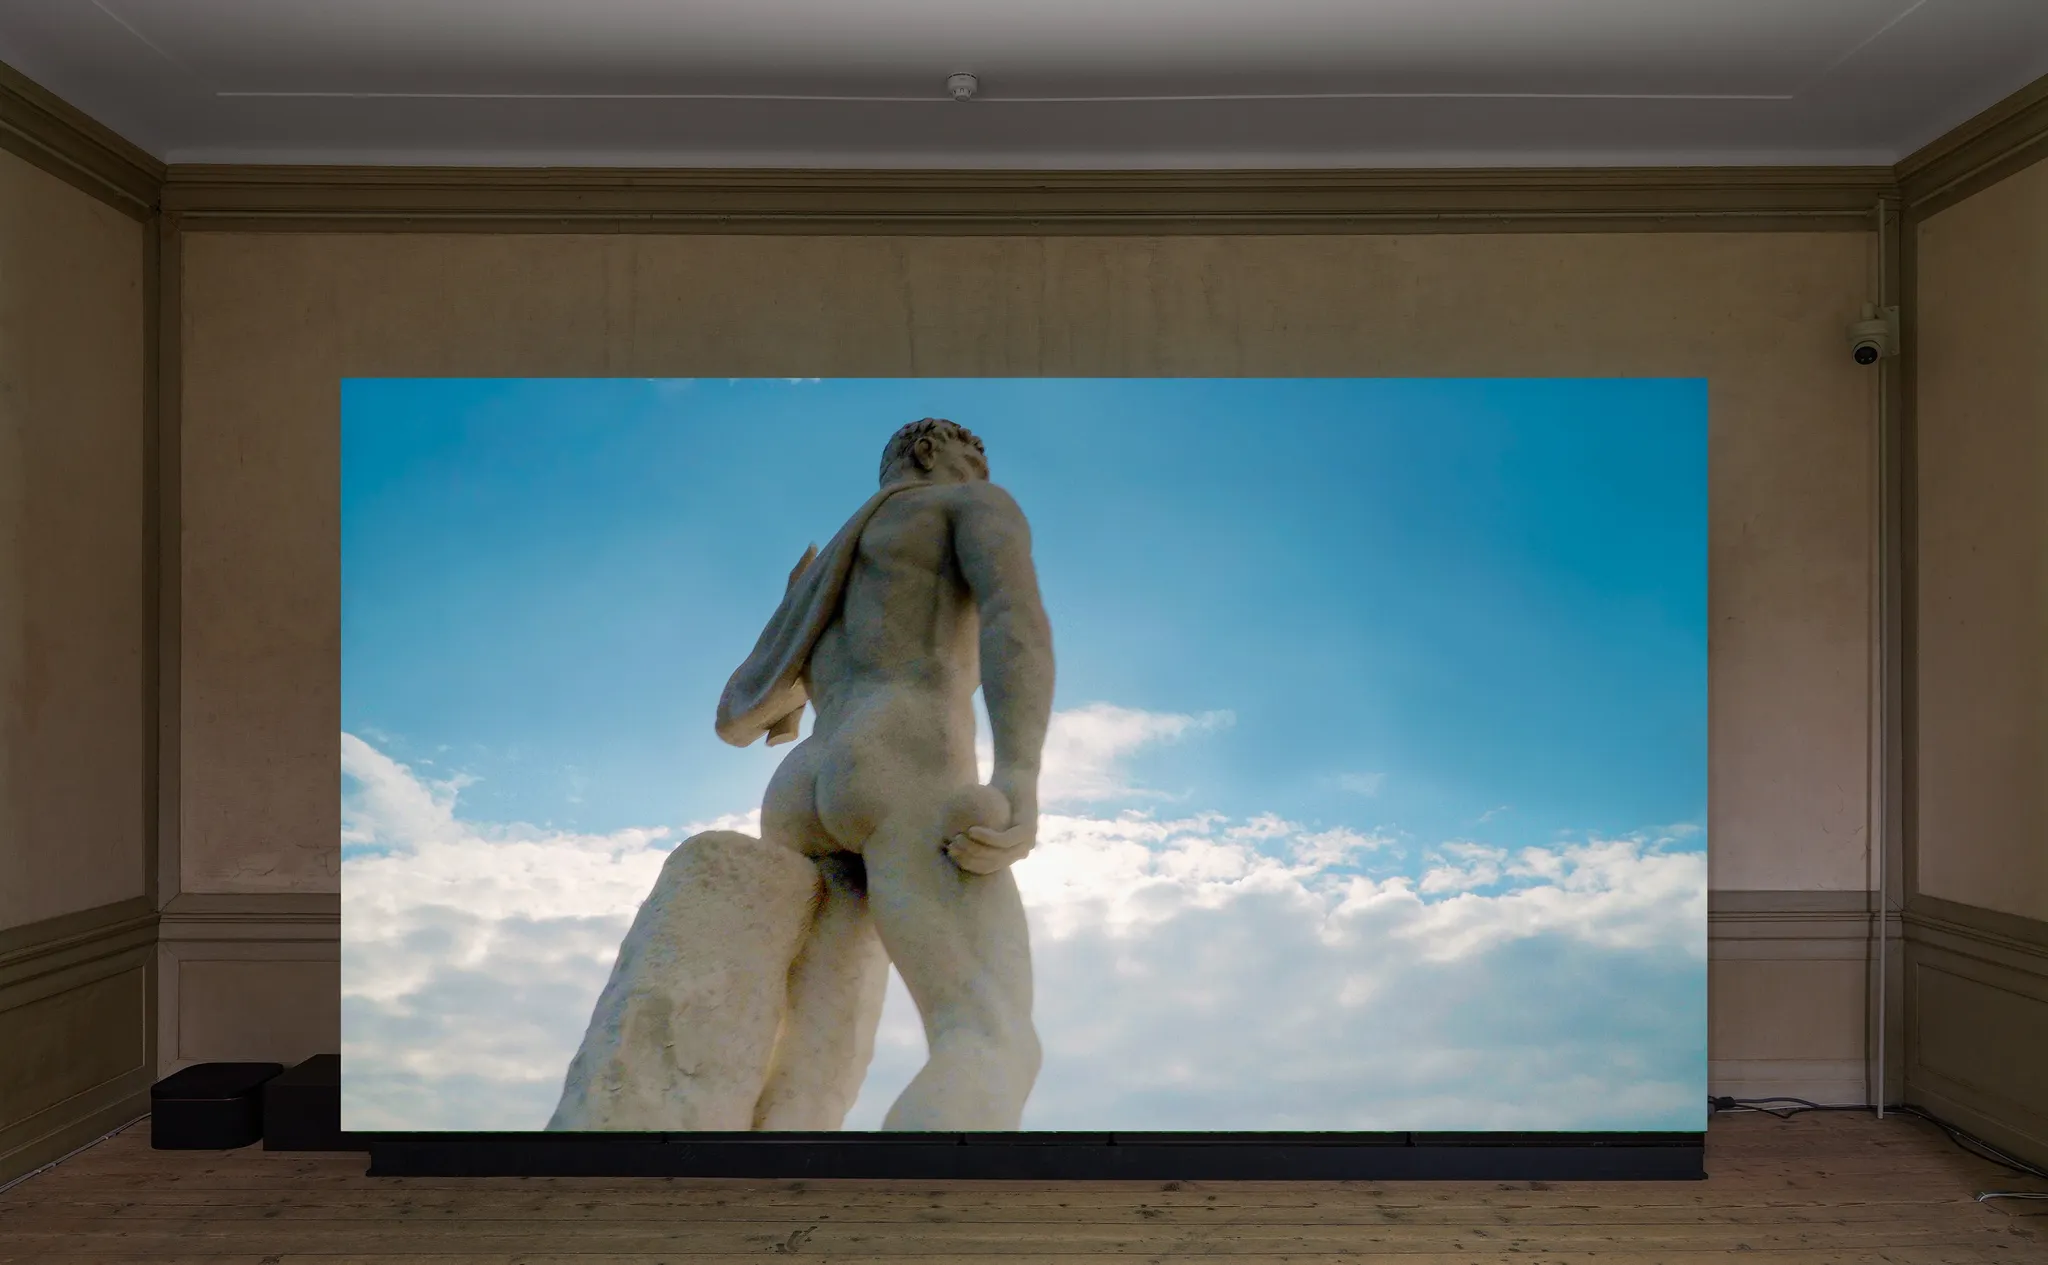 Video op een groot scherm met de achterkant van een hoog klassiek standbeeld van het Stadio dei Marmi voor een blauwe, gedeeltelijk bewolkte lucht.